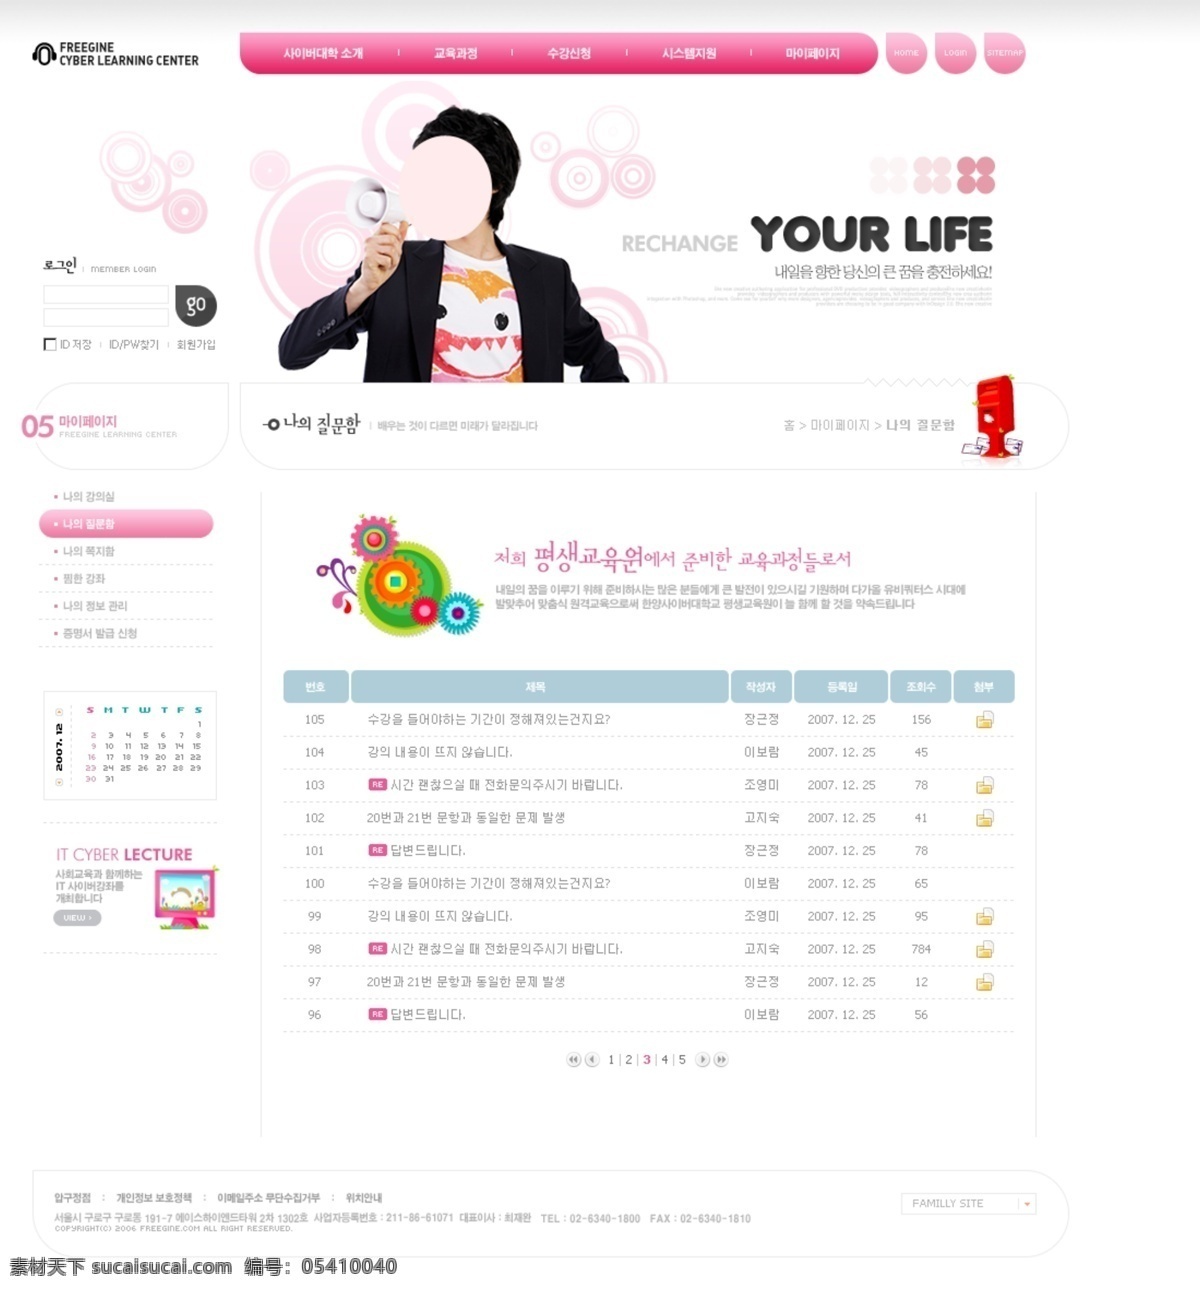 网页素材 韩版网页 企业网页 校园网 分层网页素材 韩国时尚网页 web 界面设计 韩文模板 其他网页素材